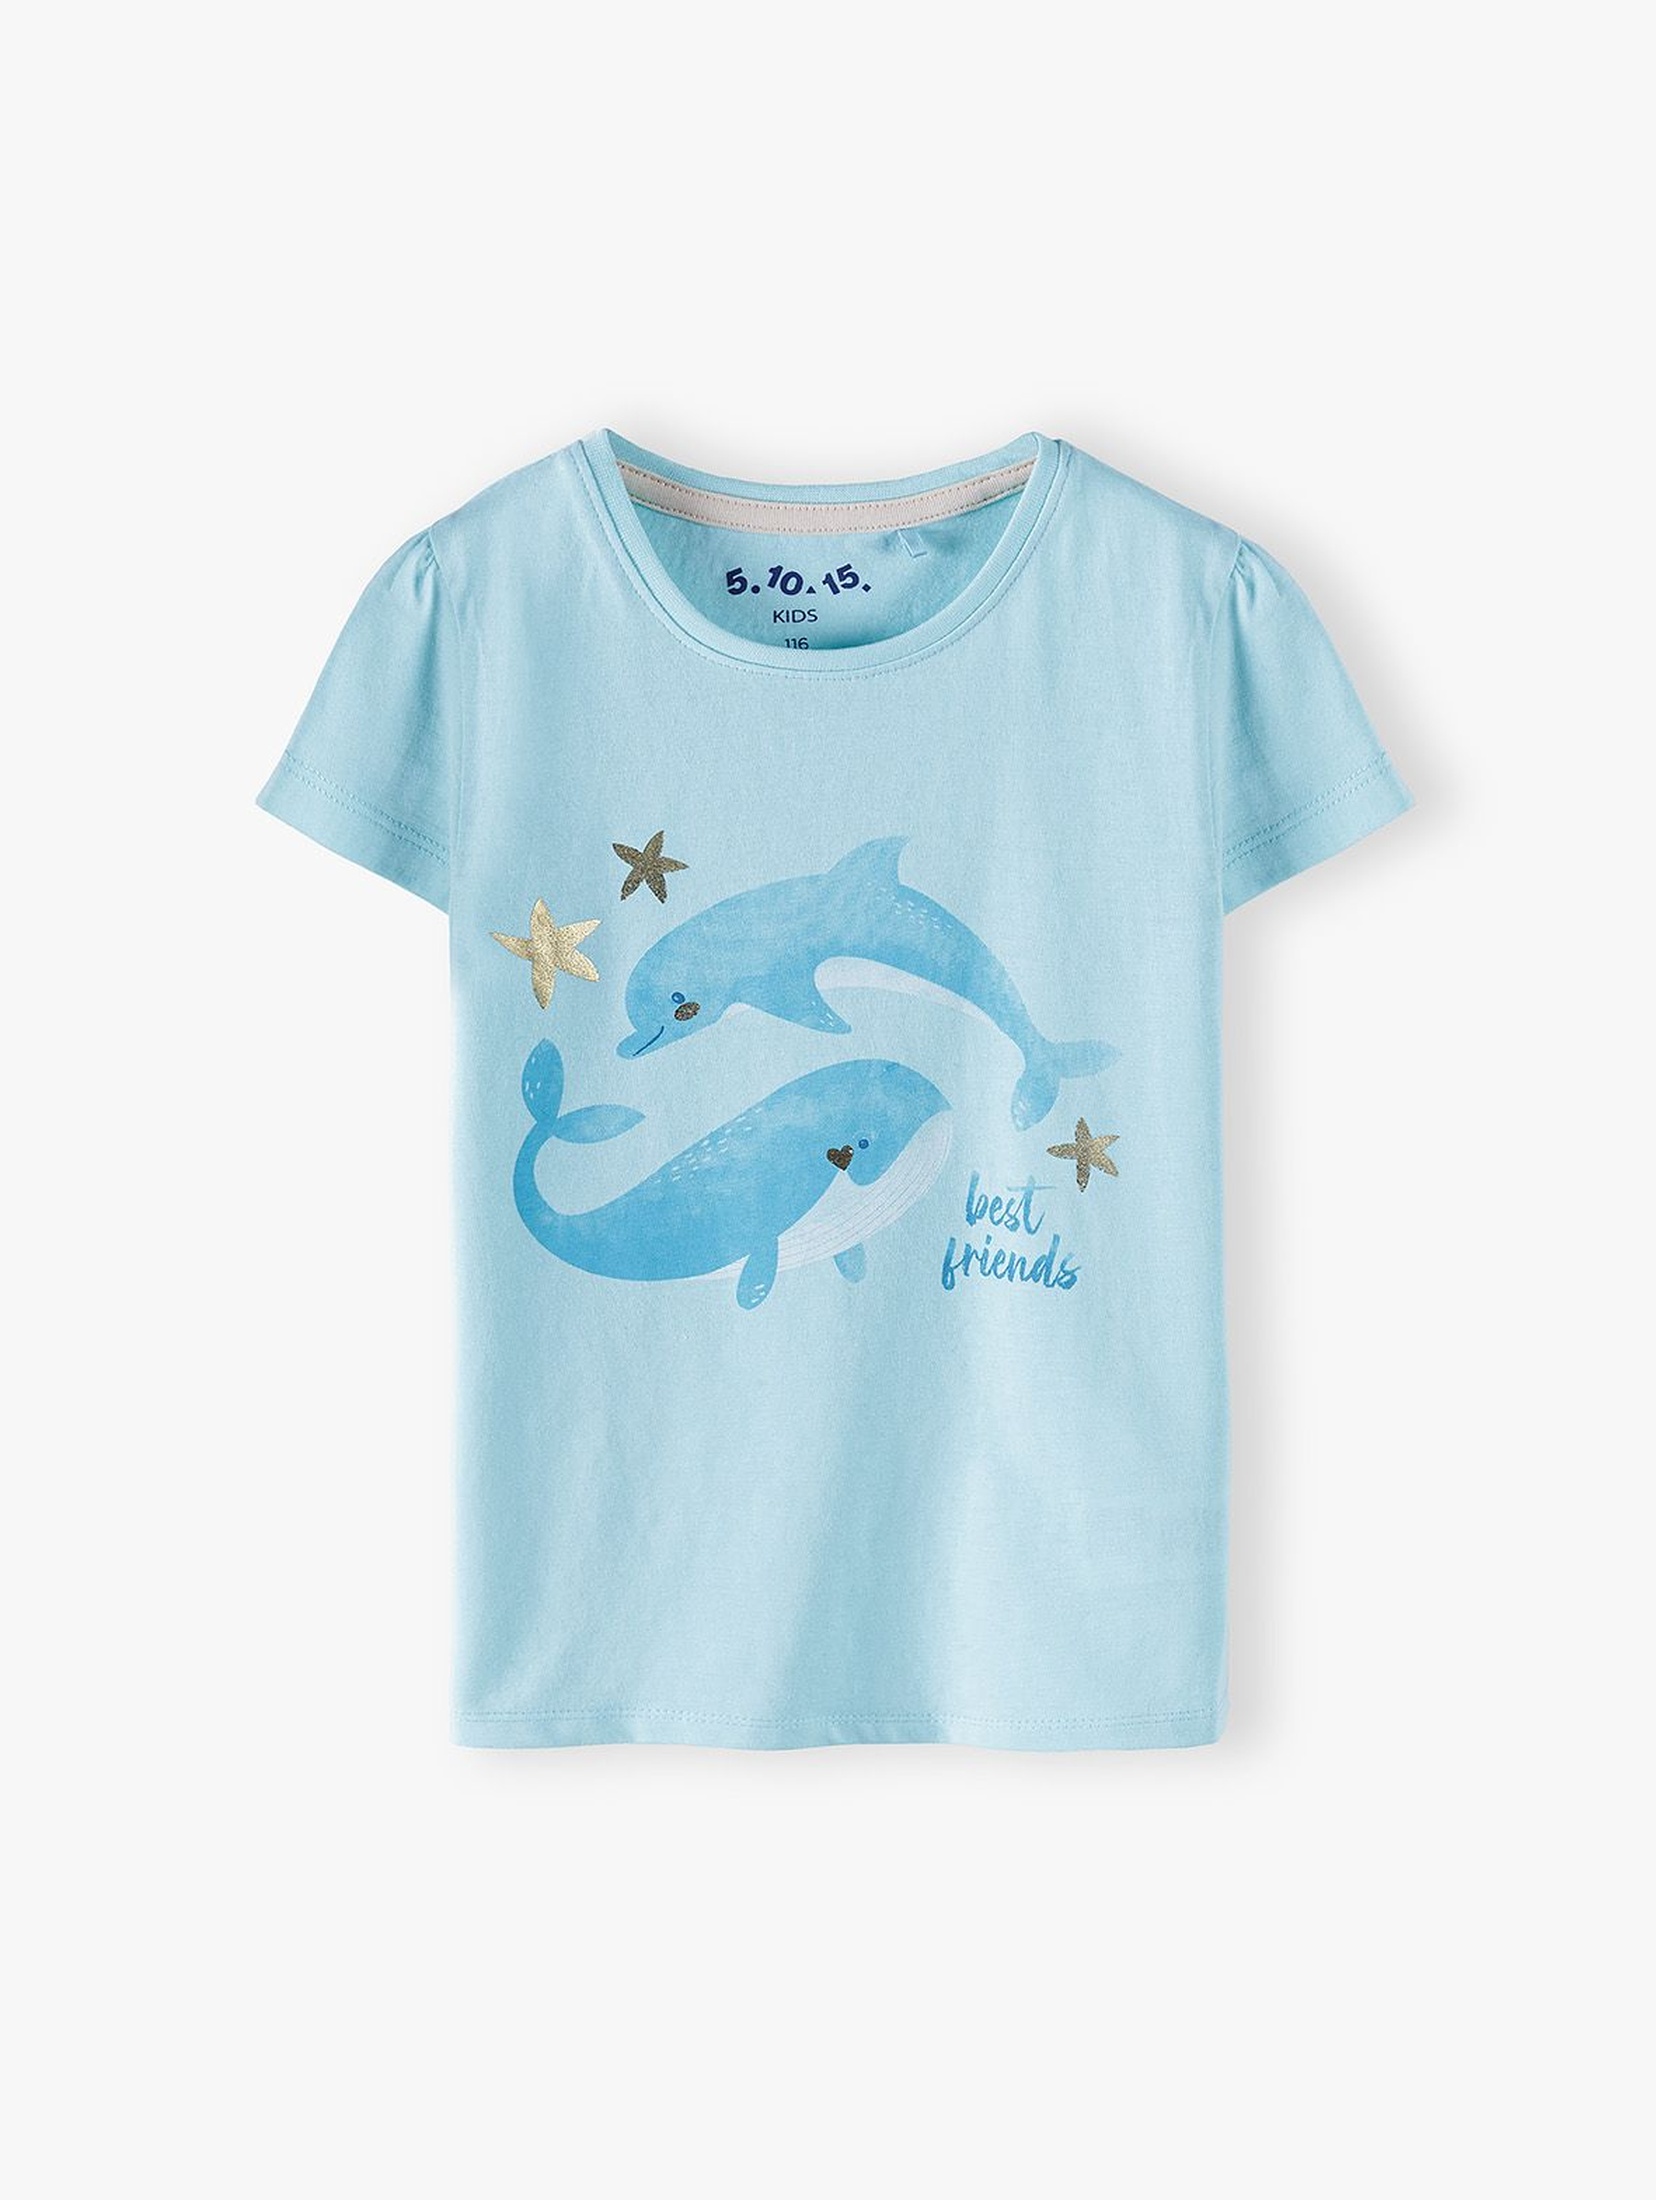 Bluzka dziewczęca z krótkim rękawem-niebieska z delfinami